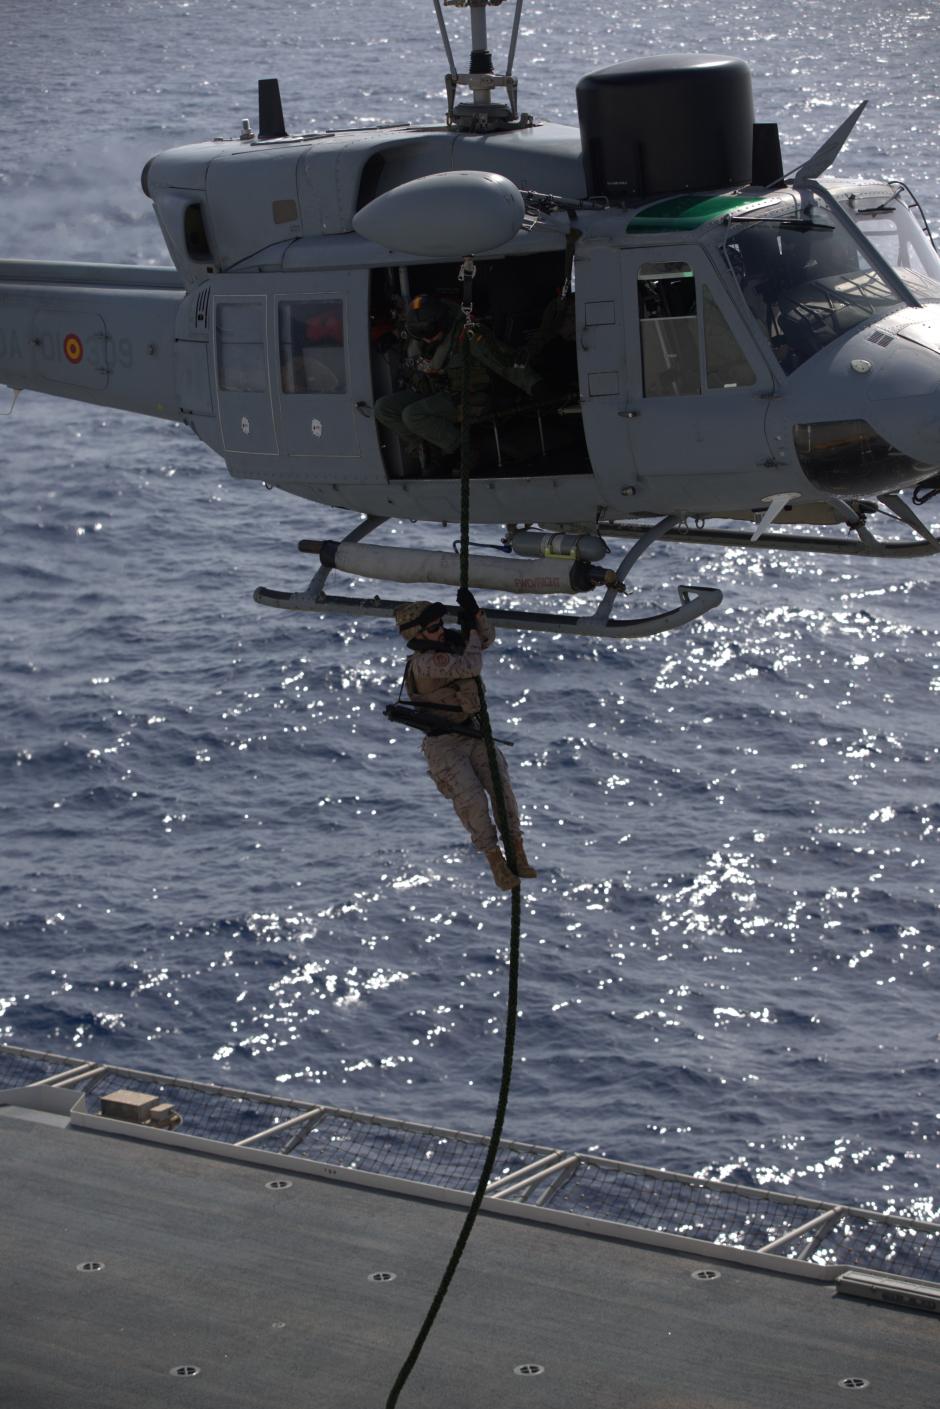 Ejercicio de inserción por "fast rope" desde un helicóptero AB-212 en el buque Juan Carlos I